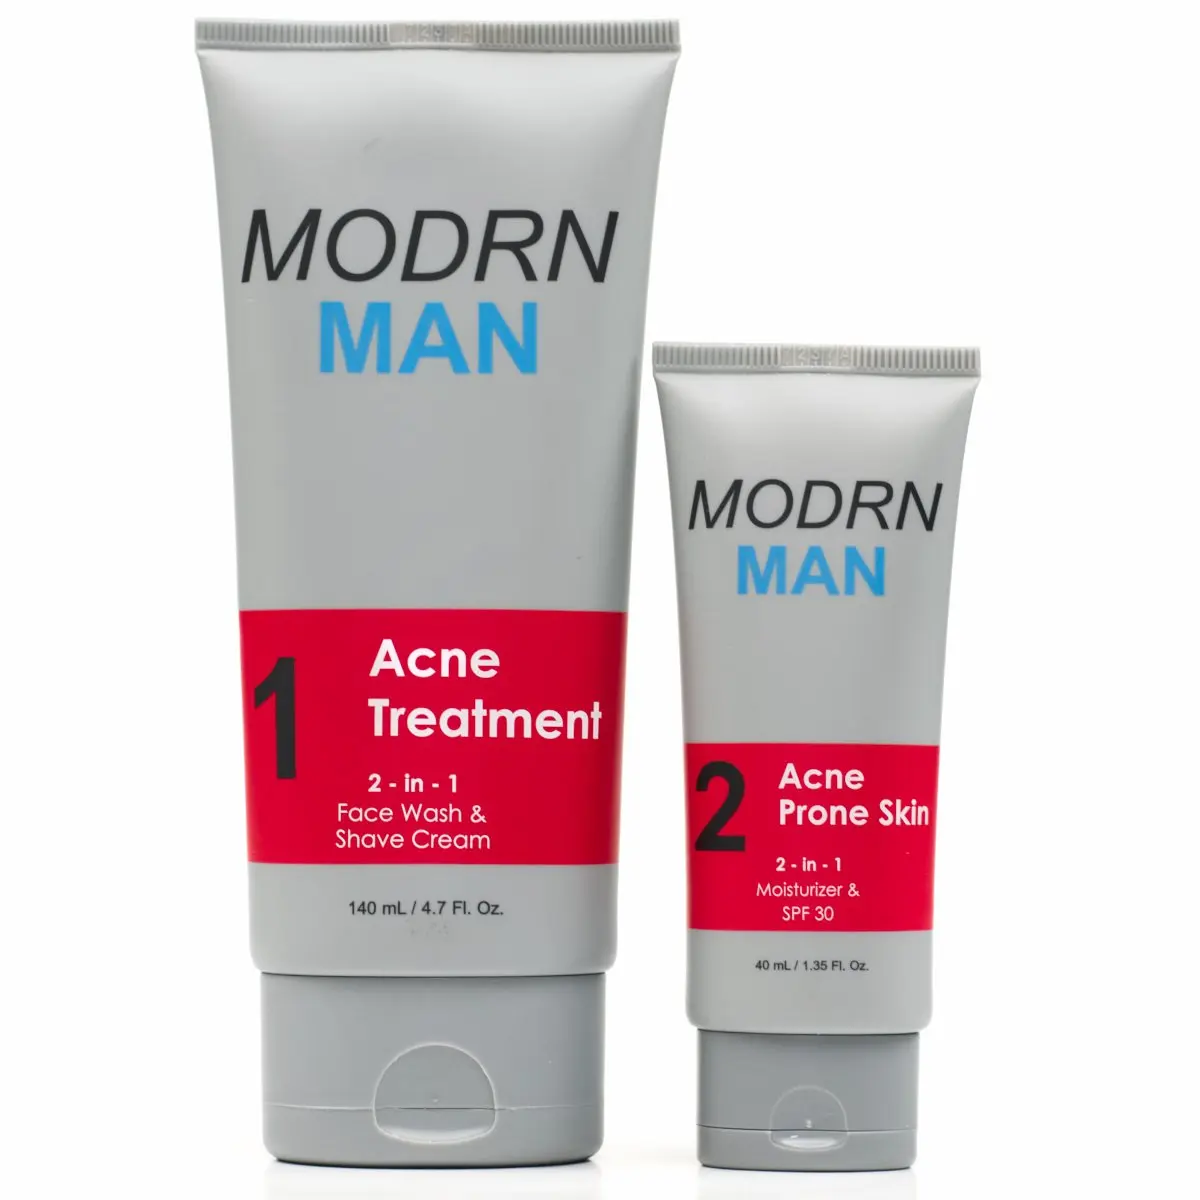 Facial moisturizer for acne